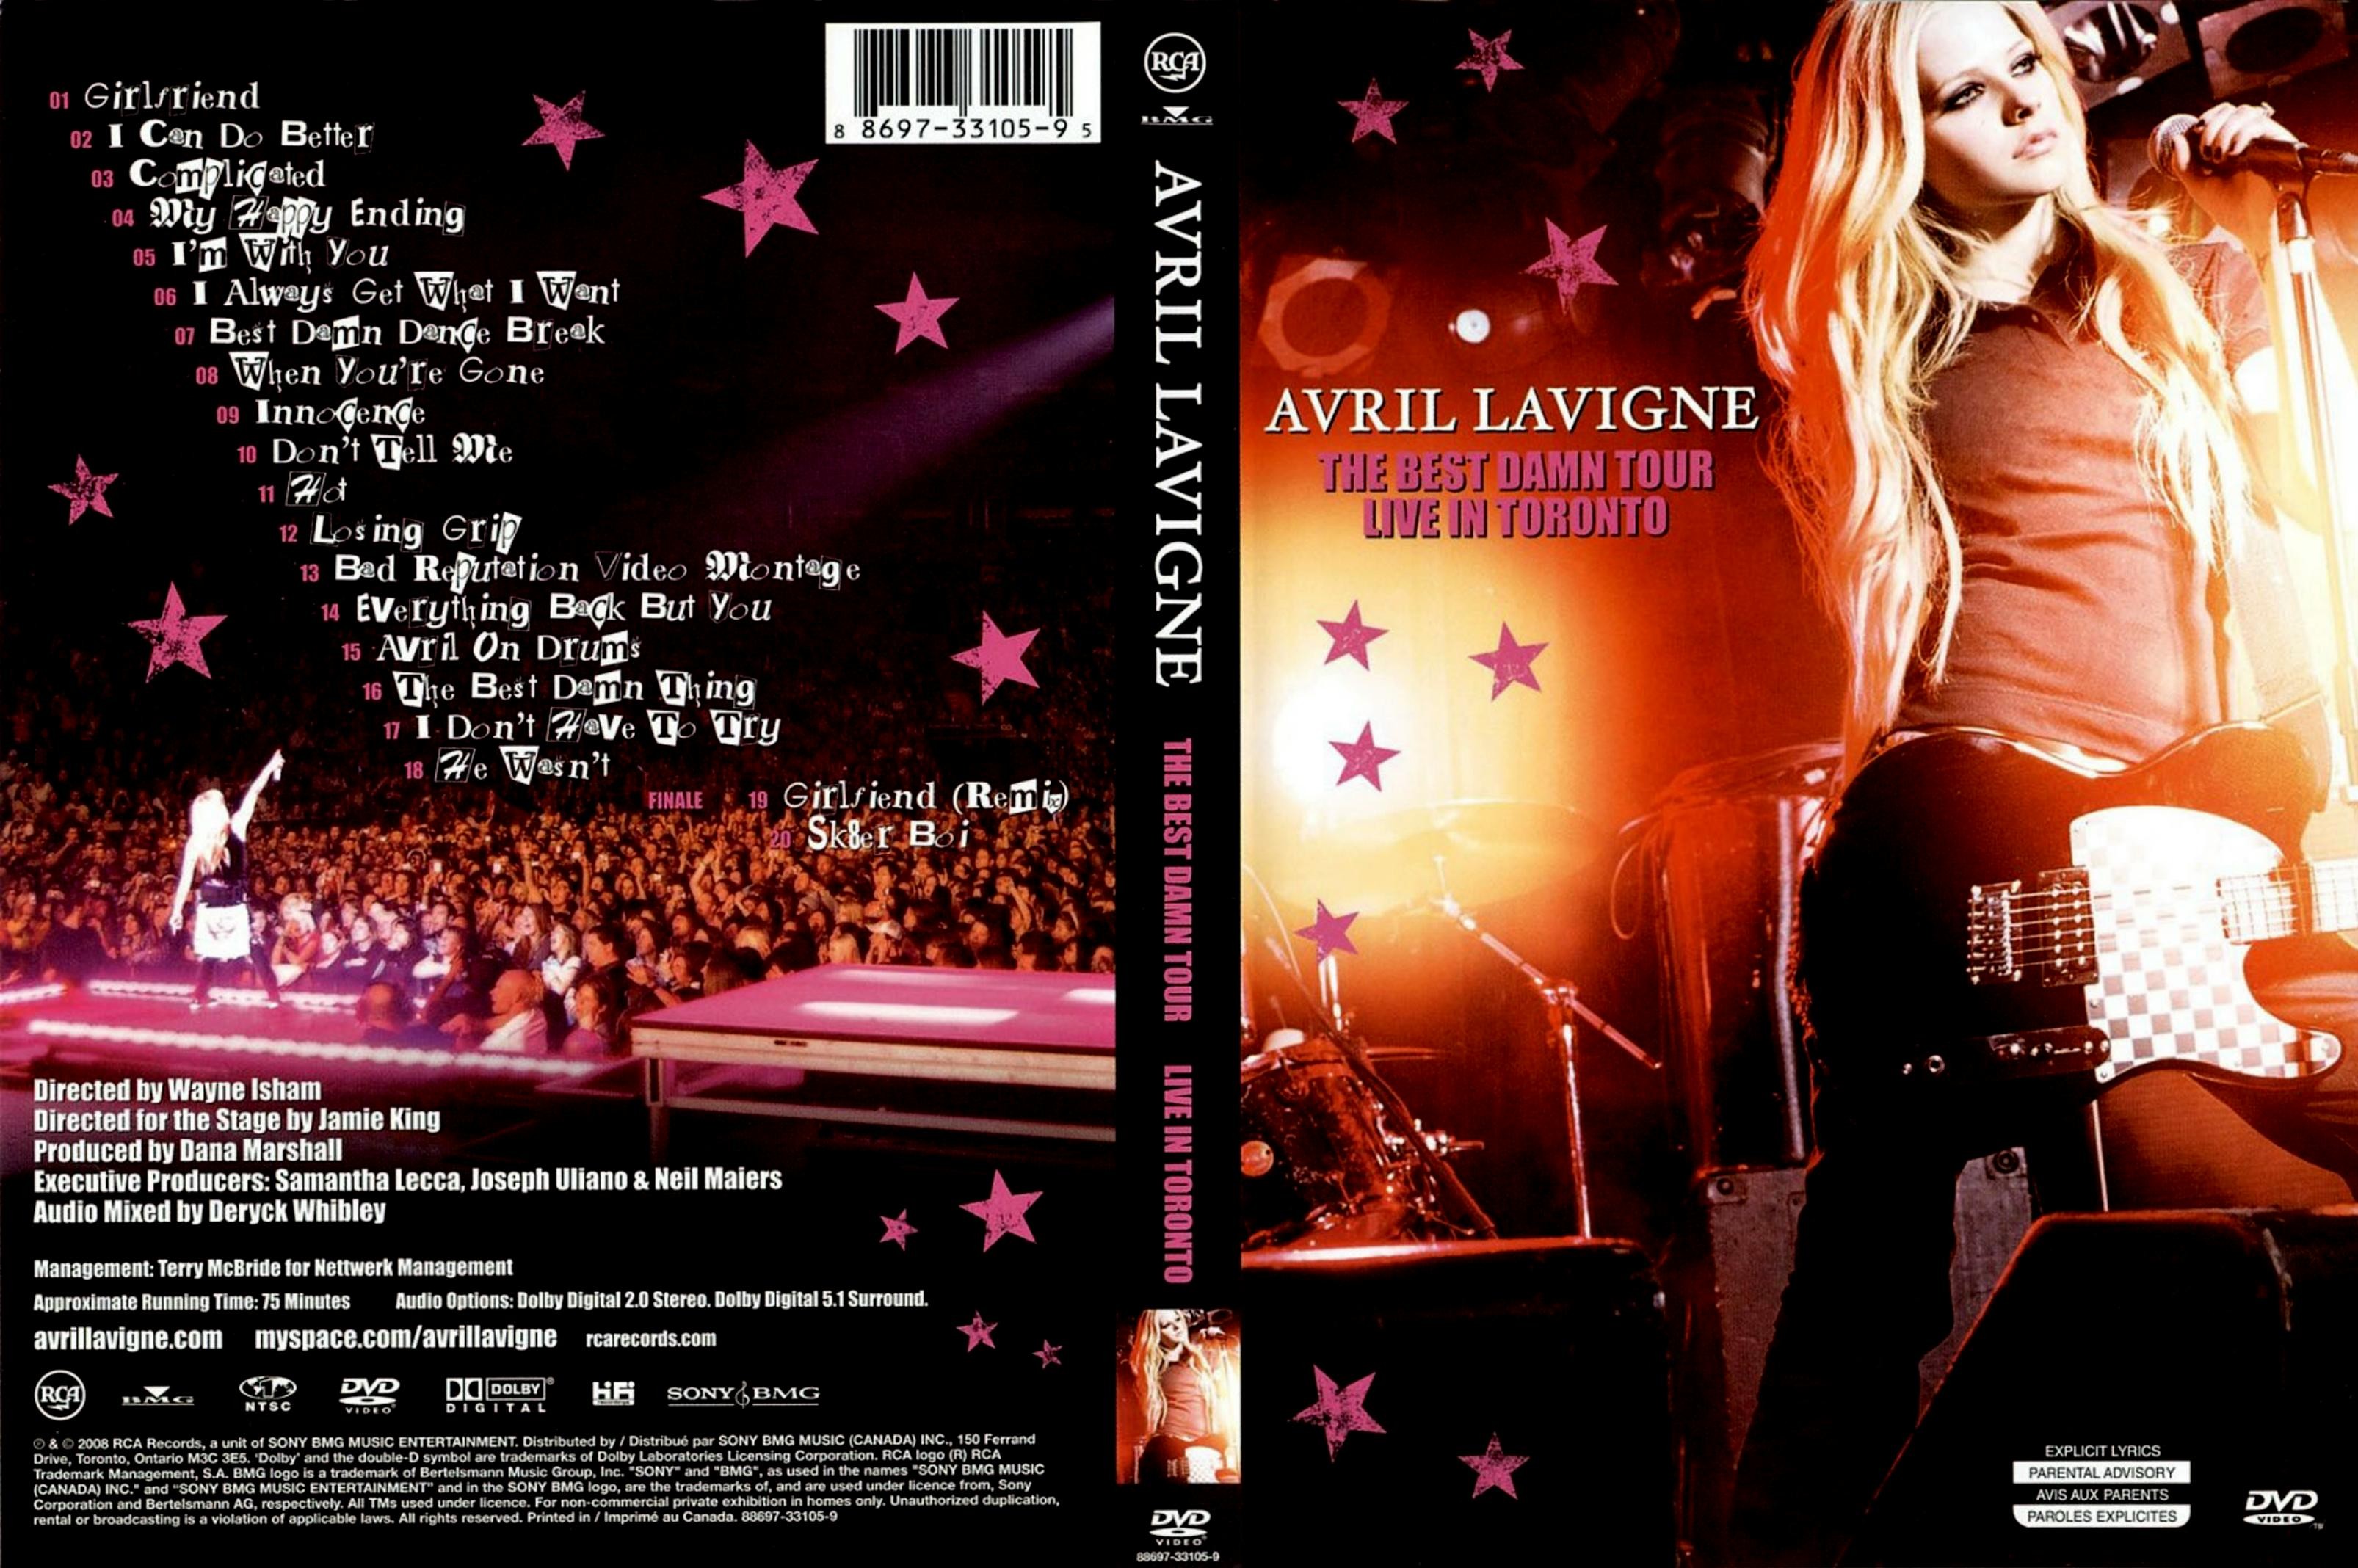 Jaquette DVD Avril Lavigne The best dawn tour